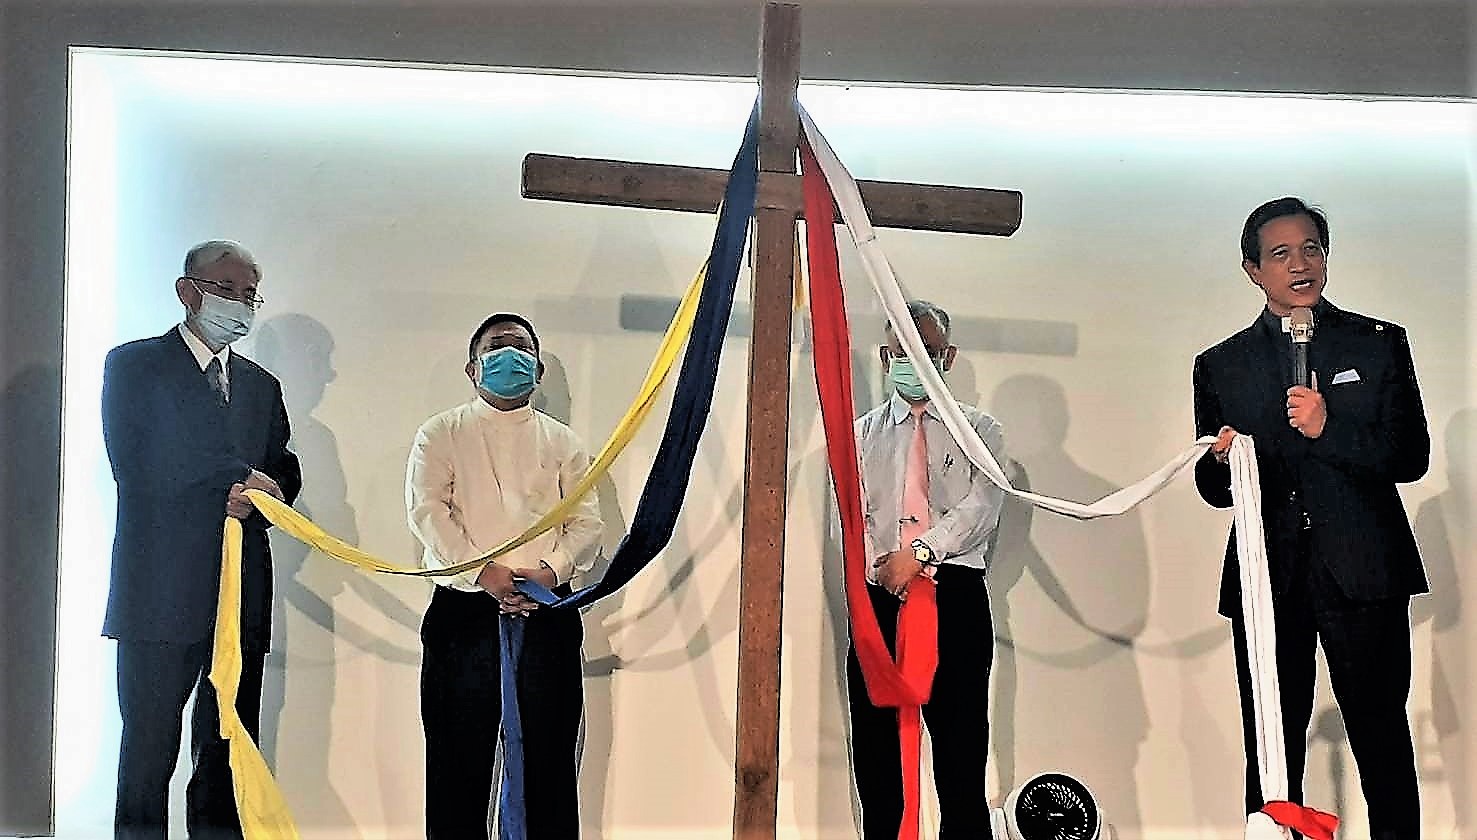 代表原住民、客家、閩南、外省的四位牧者手持十字架前的布條，象徵在十字架愛裡的合一。(圖/余慶榮牧師提供)